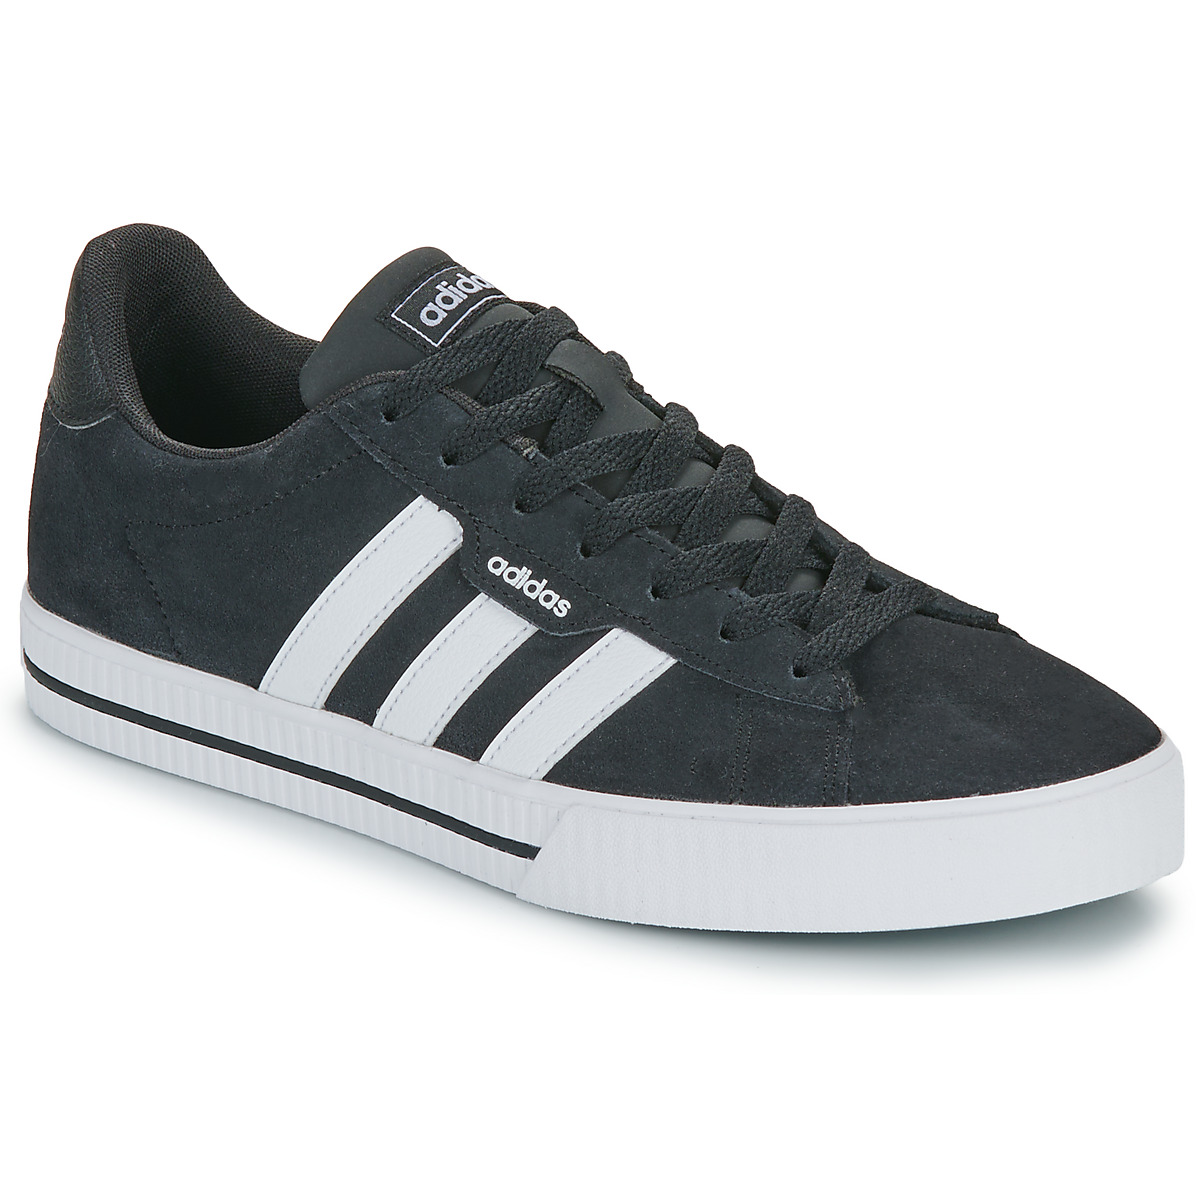 Adidas Daily 3.0 heren sneakers zwart/wit - Maat 45 - Echt leer